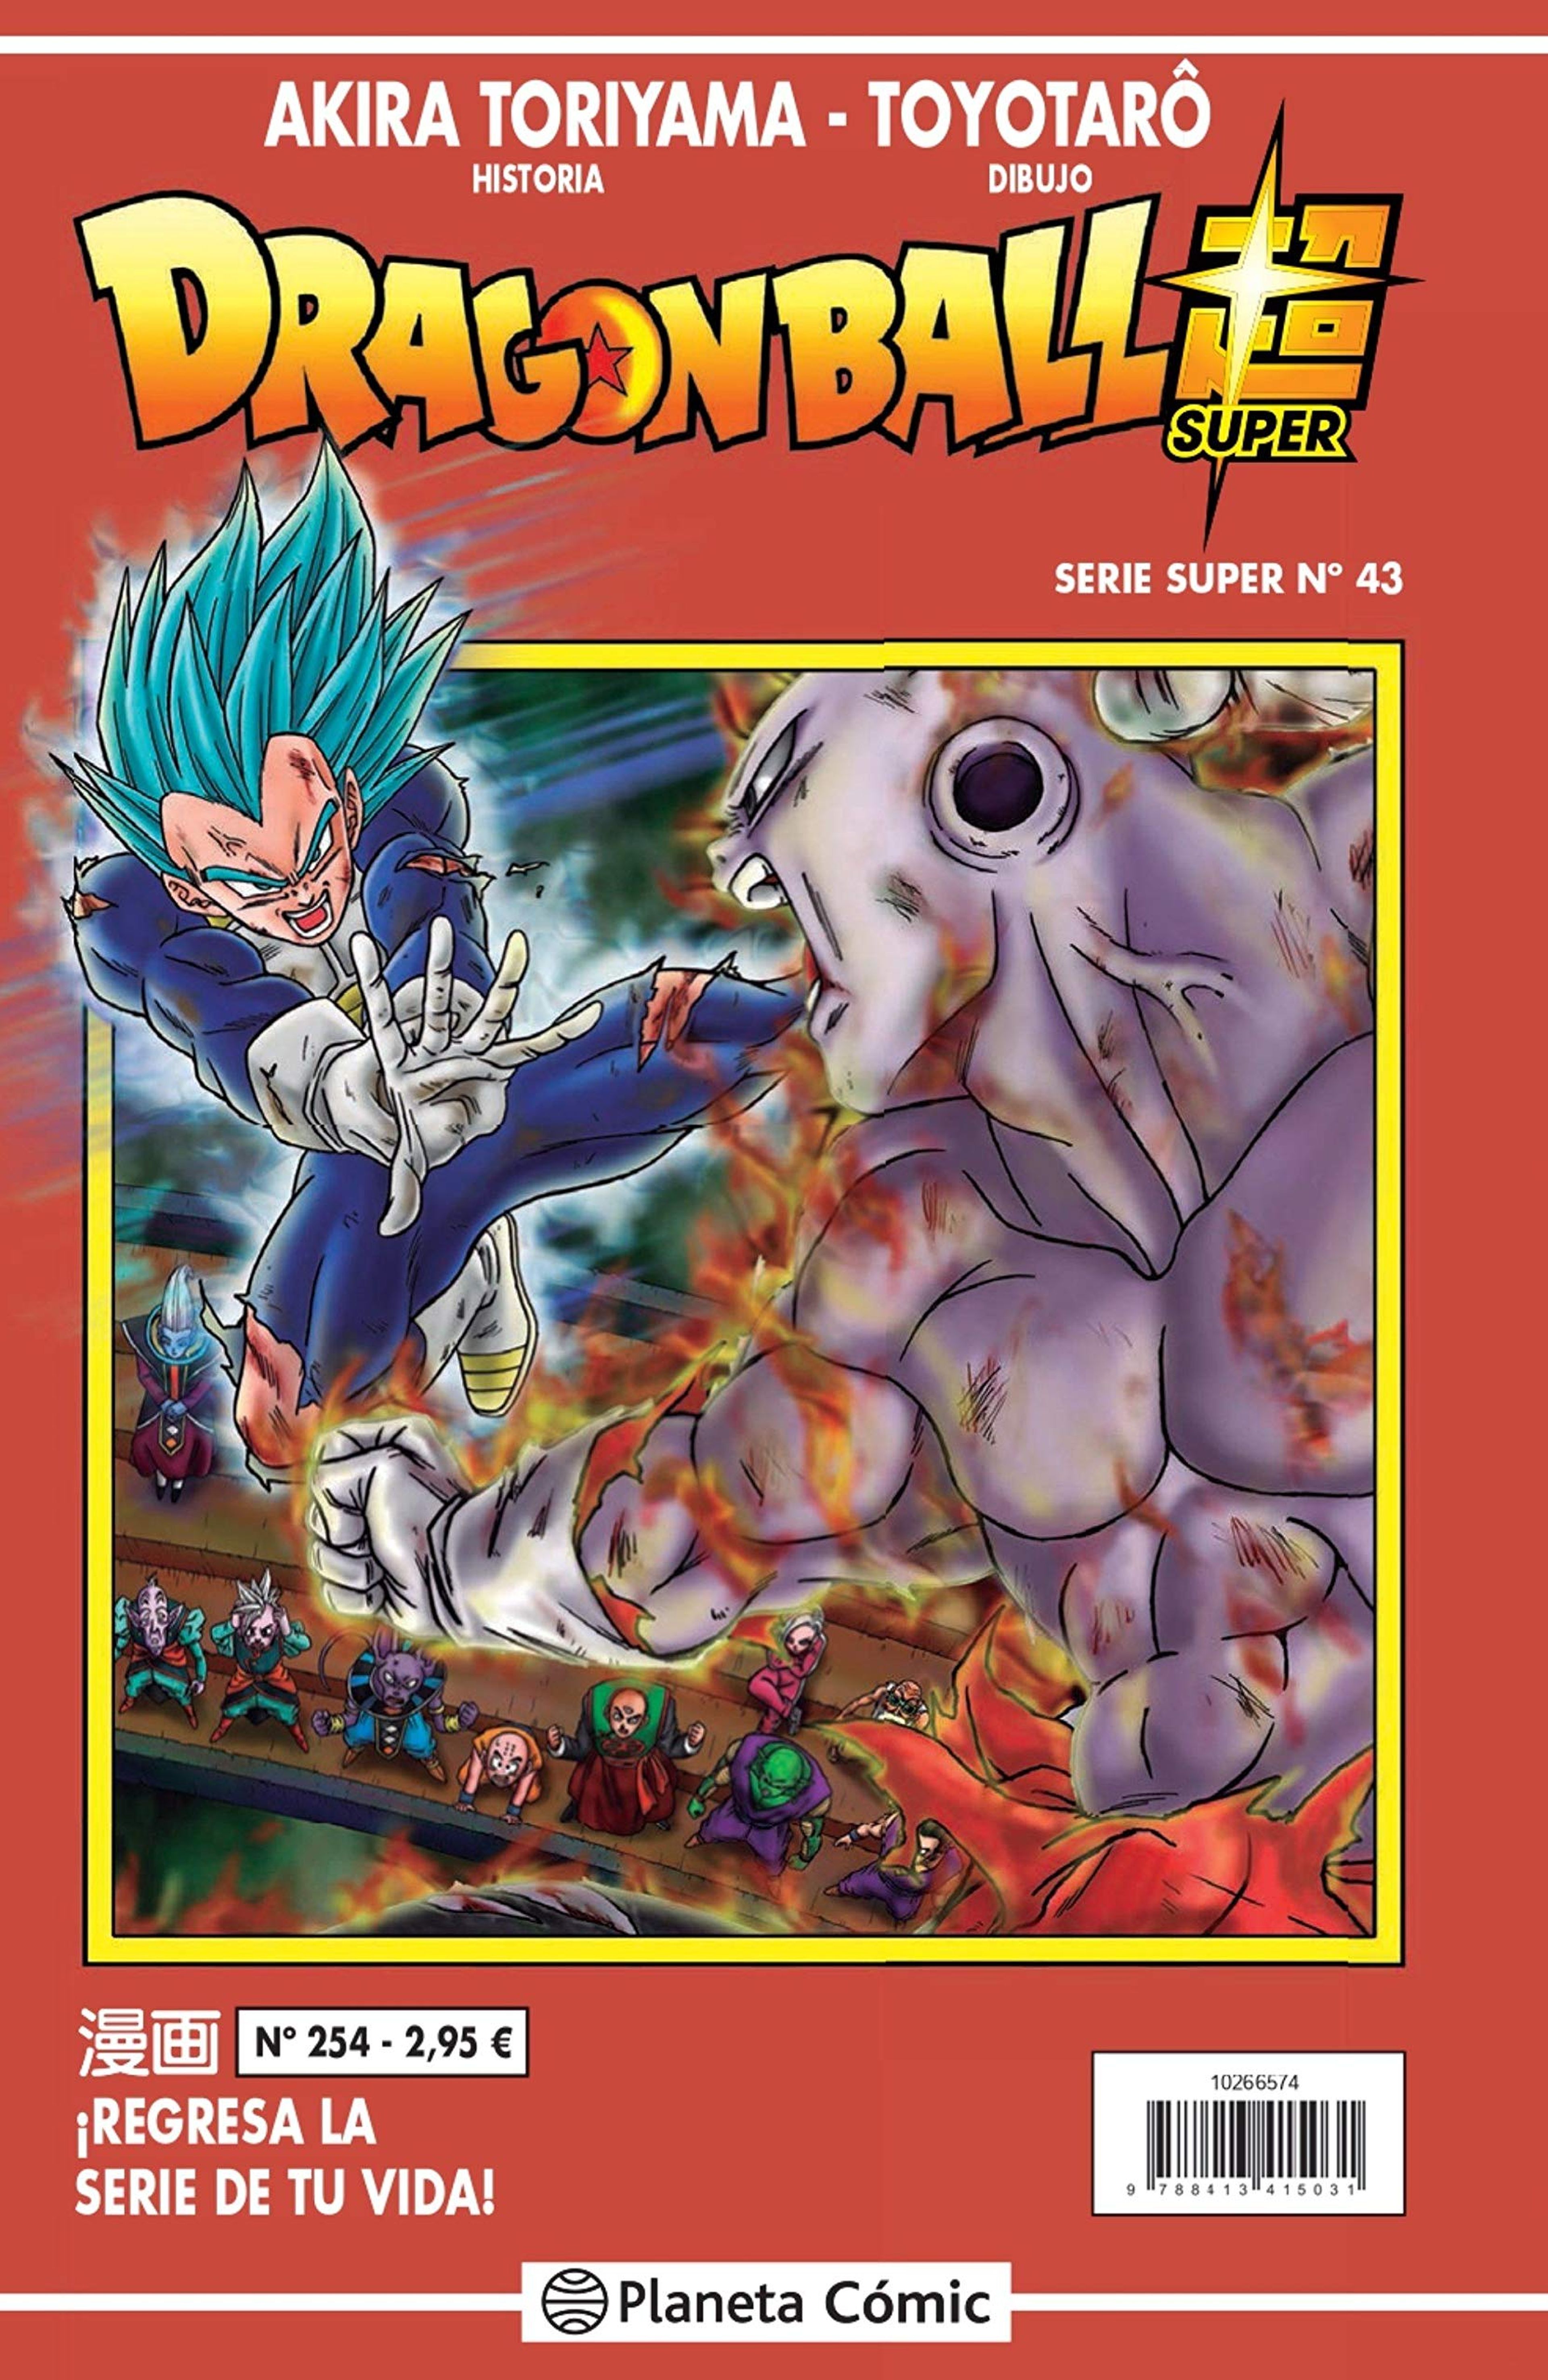 Dragon Ball Super - Portada y fecha de los números 43 y 44 de la Serie Roja